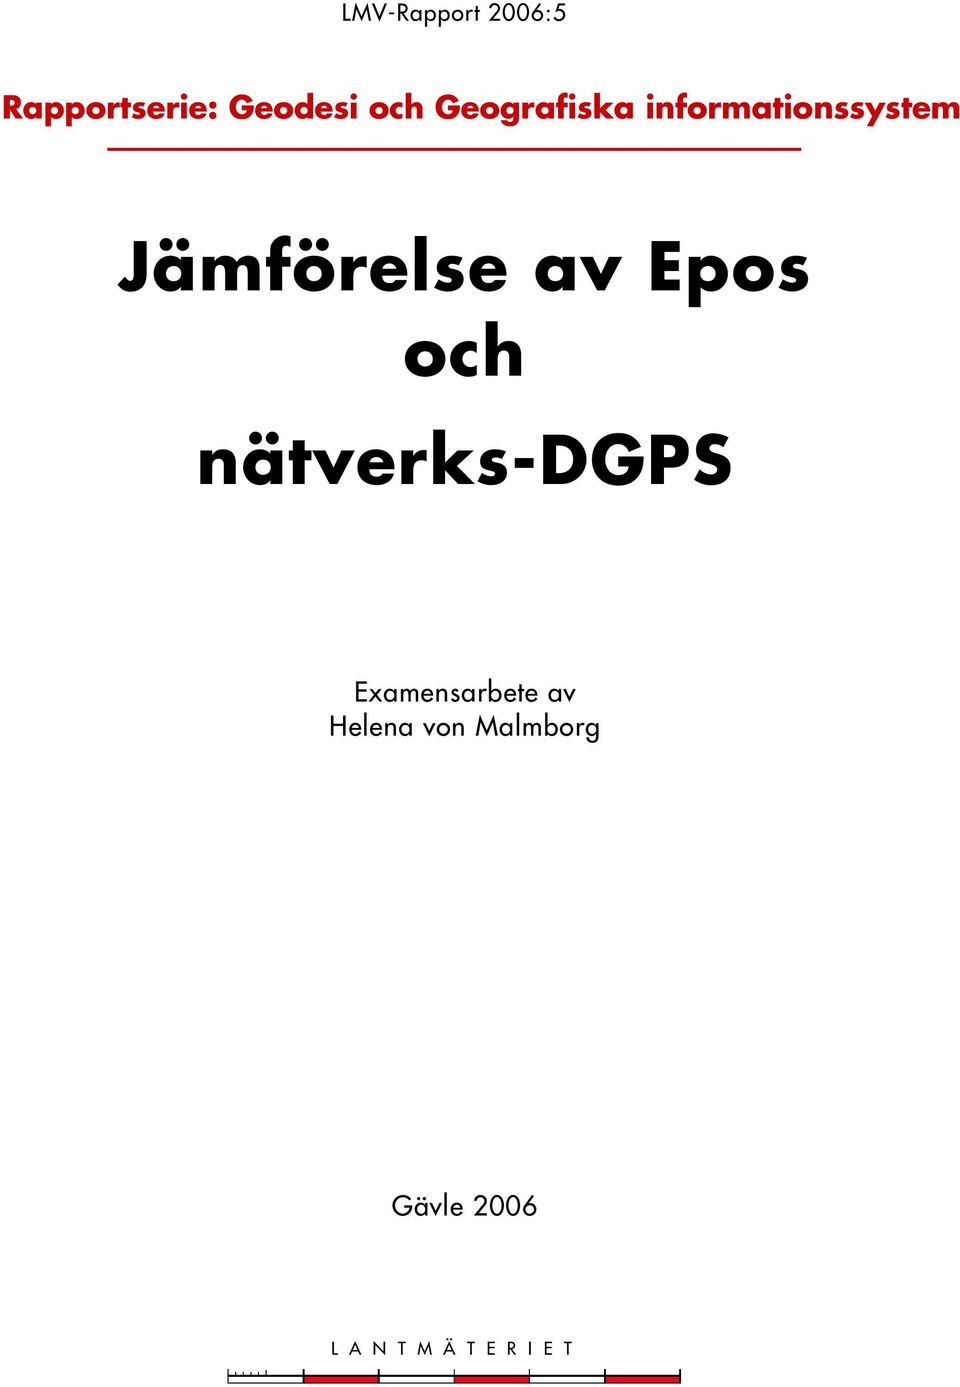 Epos och nätverks-dgps Examensarbete av